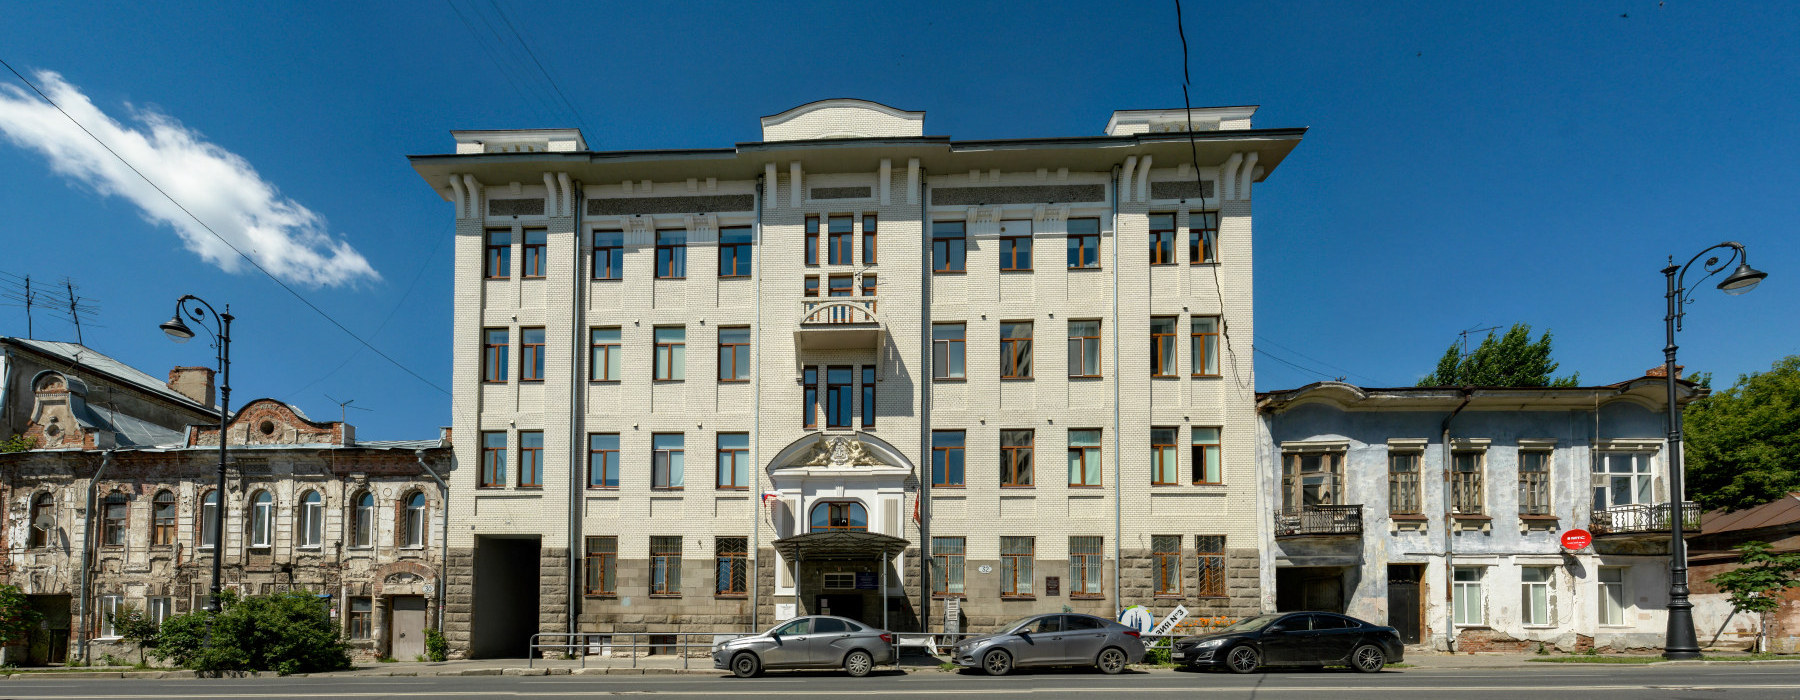 Samara, Улица Куйбышева, 30; улица Куйбышева, 32; Улица Куйбышева, 34